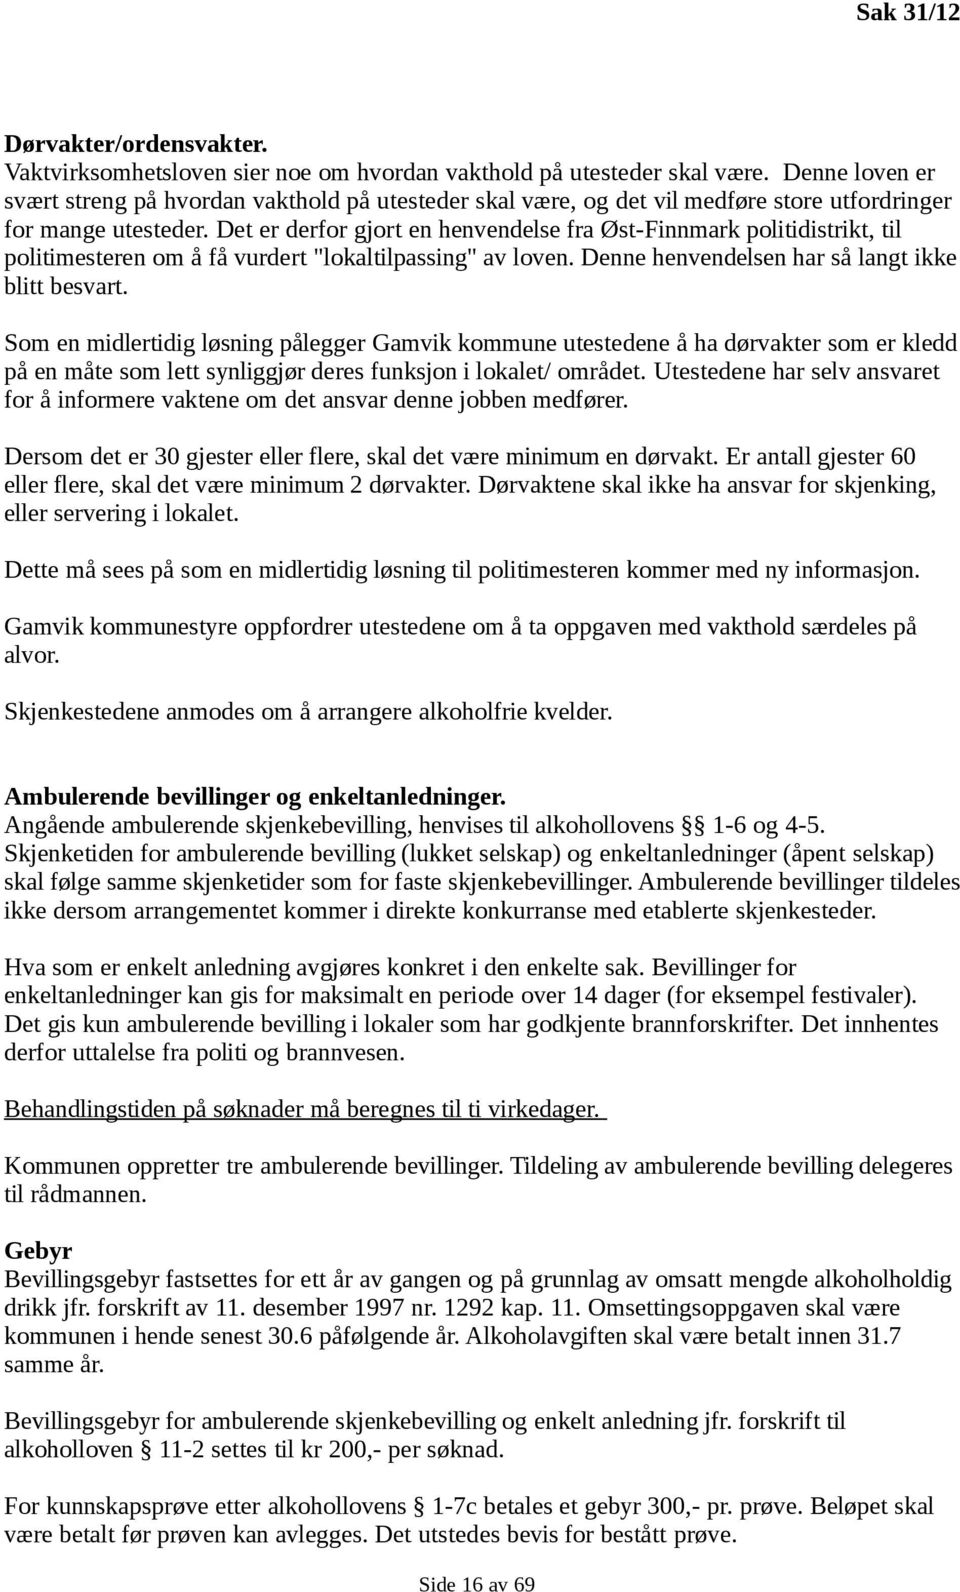 Det er derfor gjort en henvendelse fra Øst-Finnmark politidistrikt, til politimesteren om å få vurdert "lokaltilpassing" av loven. Denne henvendelsen har så langt ikke blitt besvart.